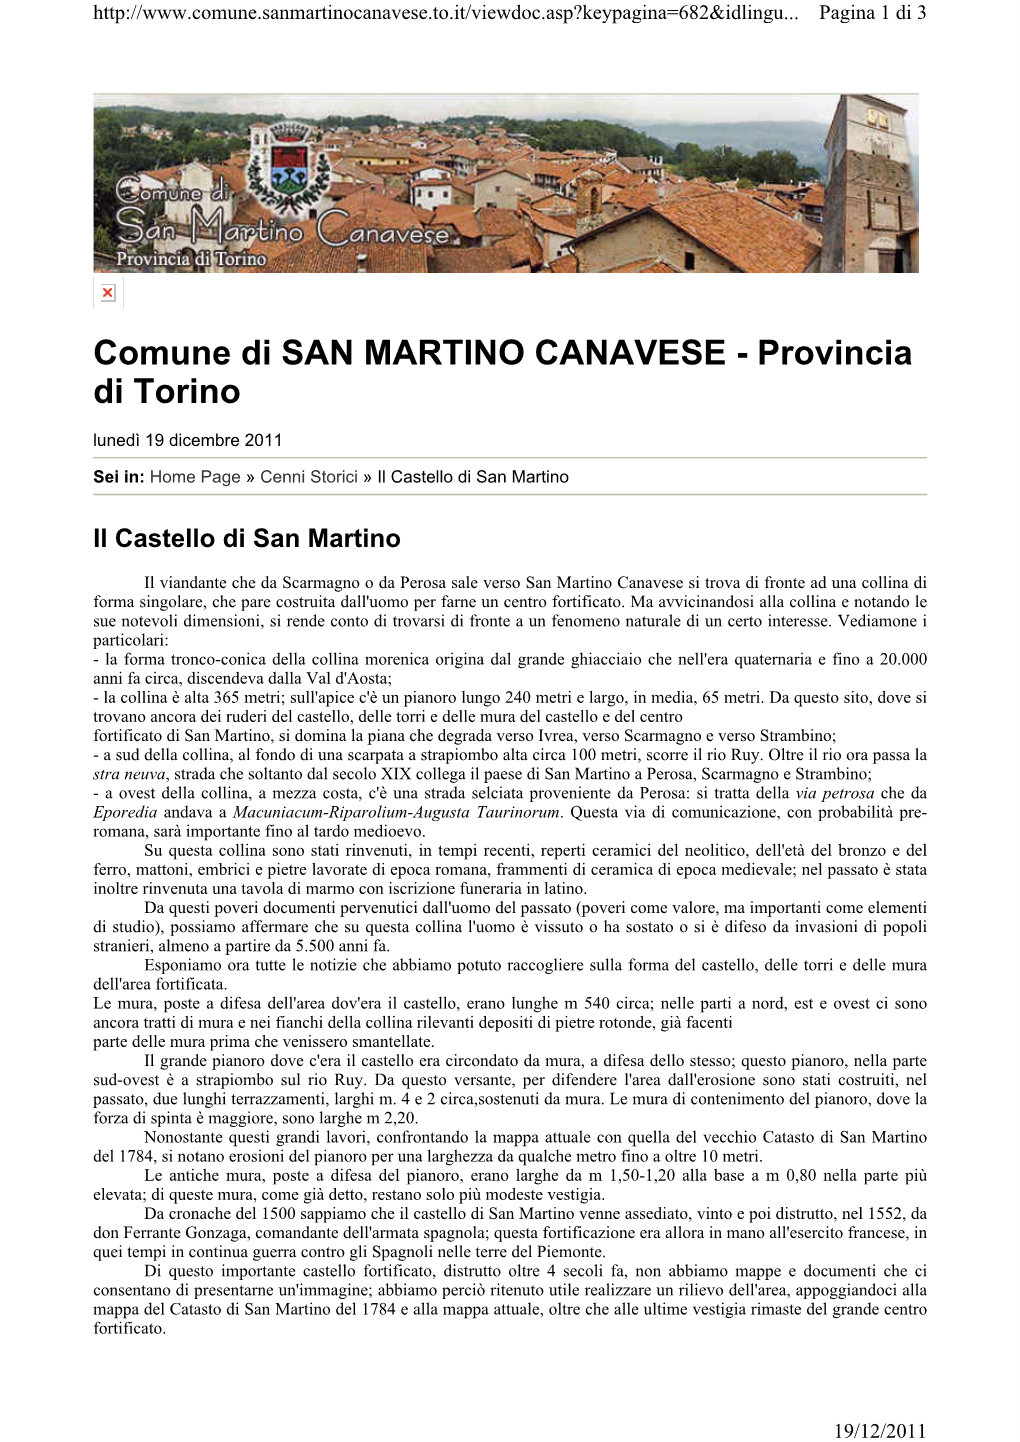 Comune Di SAN MARTINO CANAVESE - Provincia Di Torino